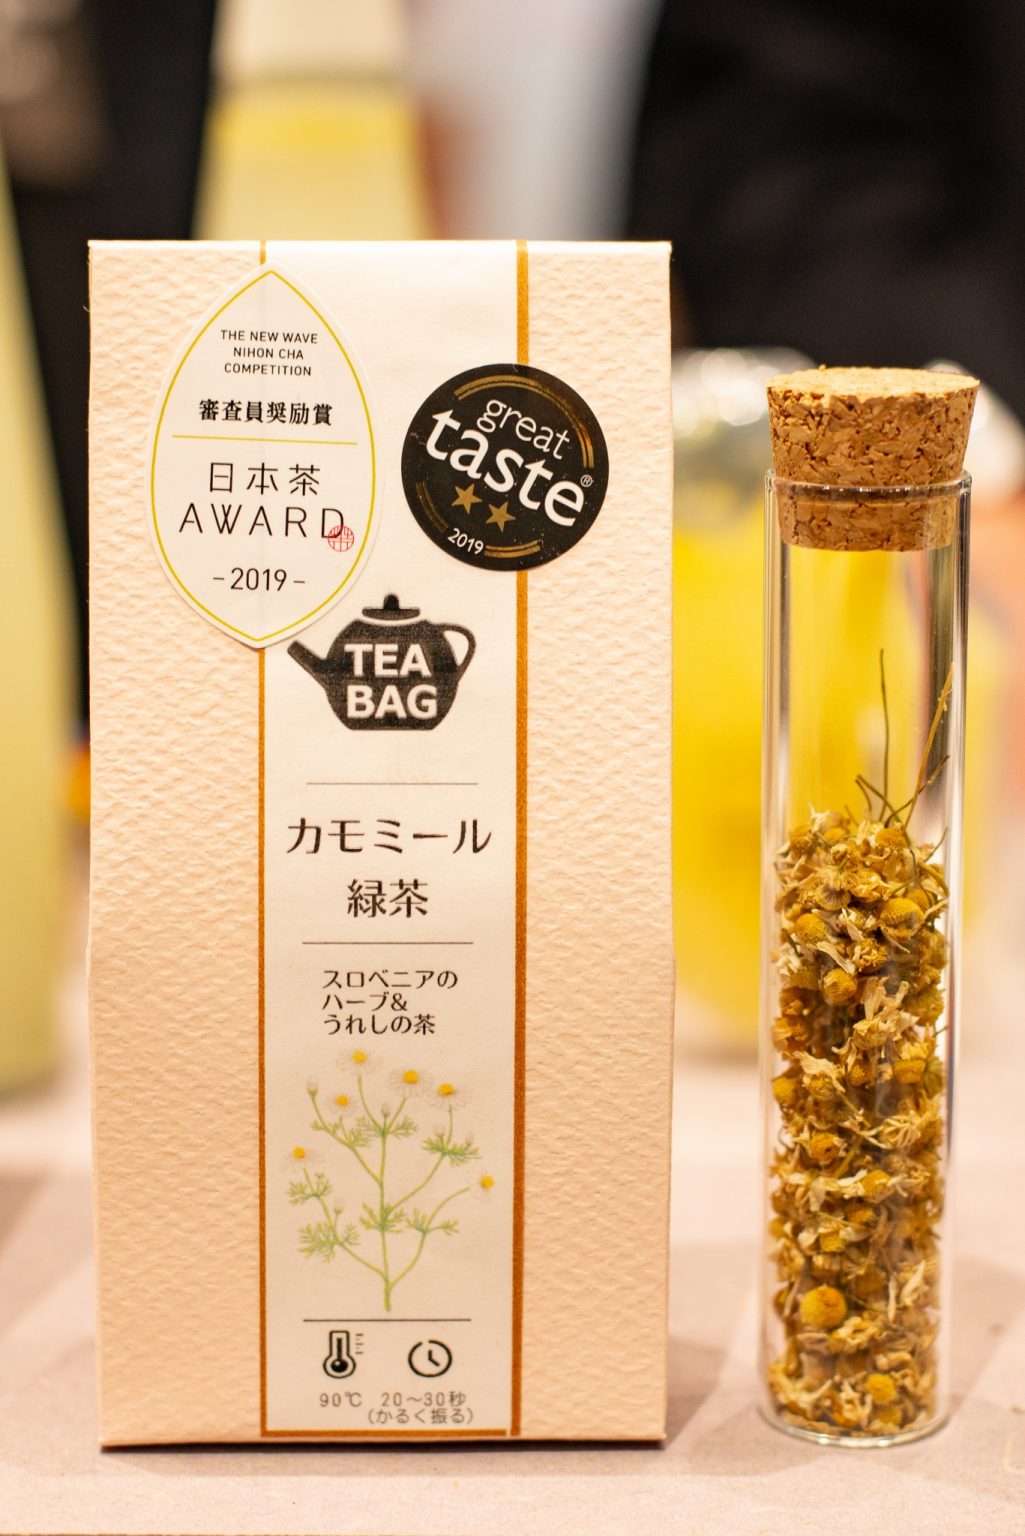 ハーブティーのような風味が楽しめる「カモミール緑茶」。日本屈指のお茶どころである嬉野市にて、最高品質茶葉を生産・販売する〈徳永製茶〉による製品。